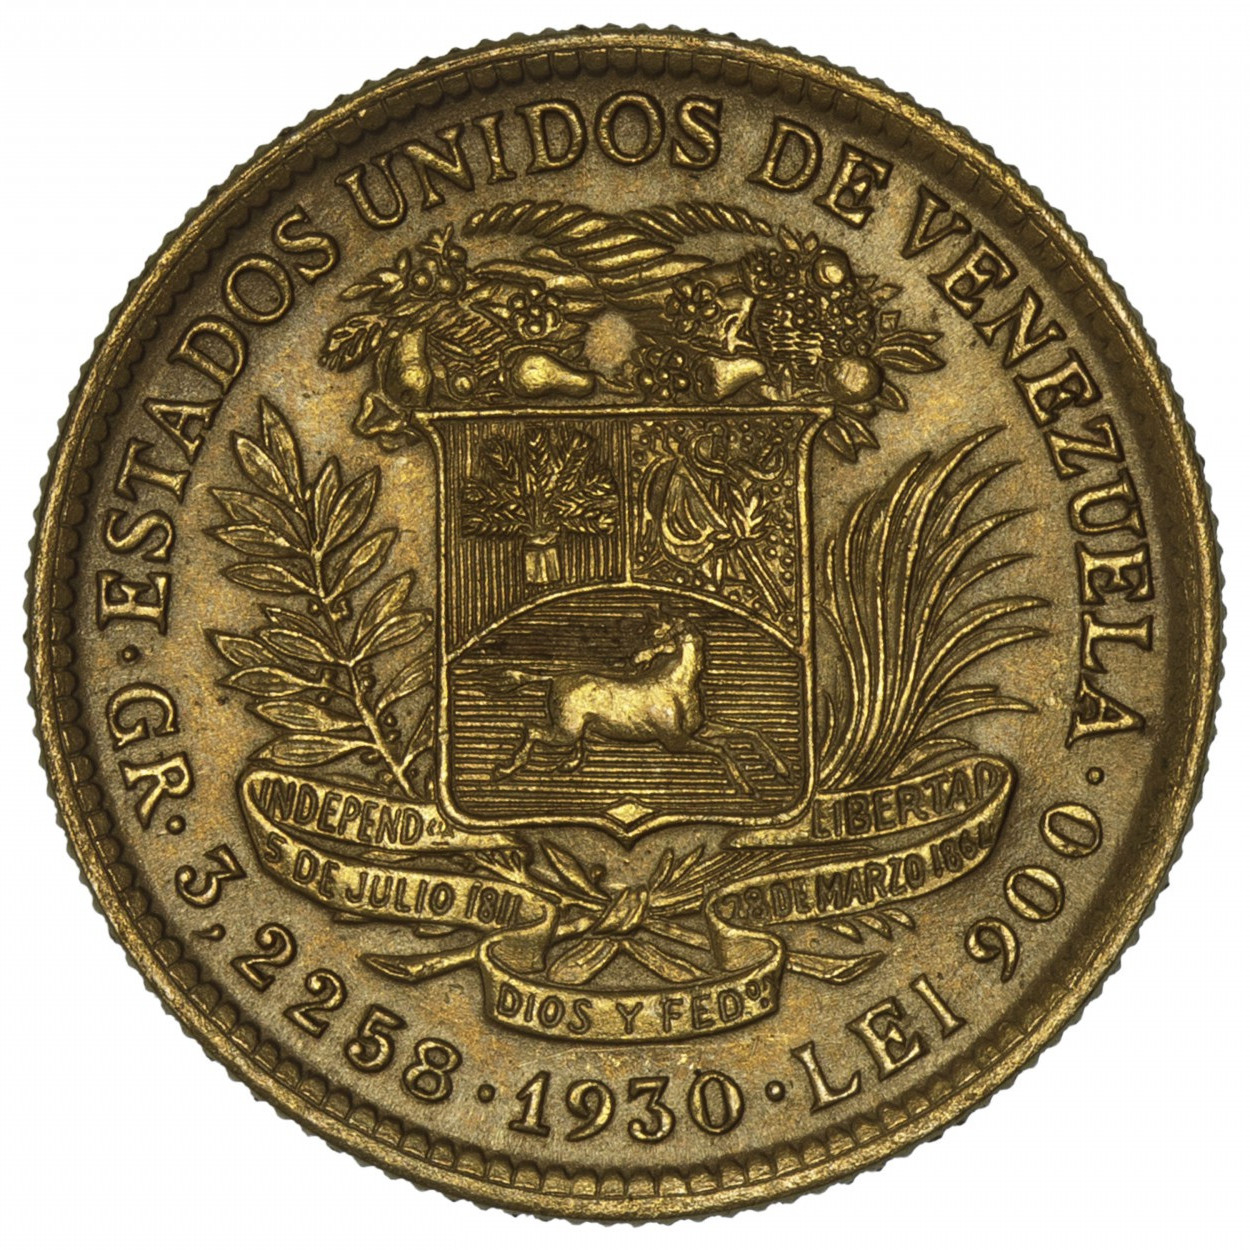 Venezuela - 10 Bolivares - 1930 revers